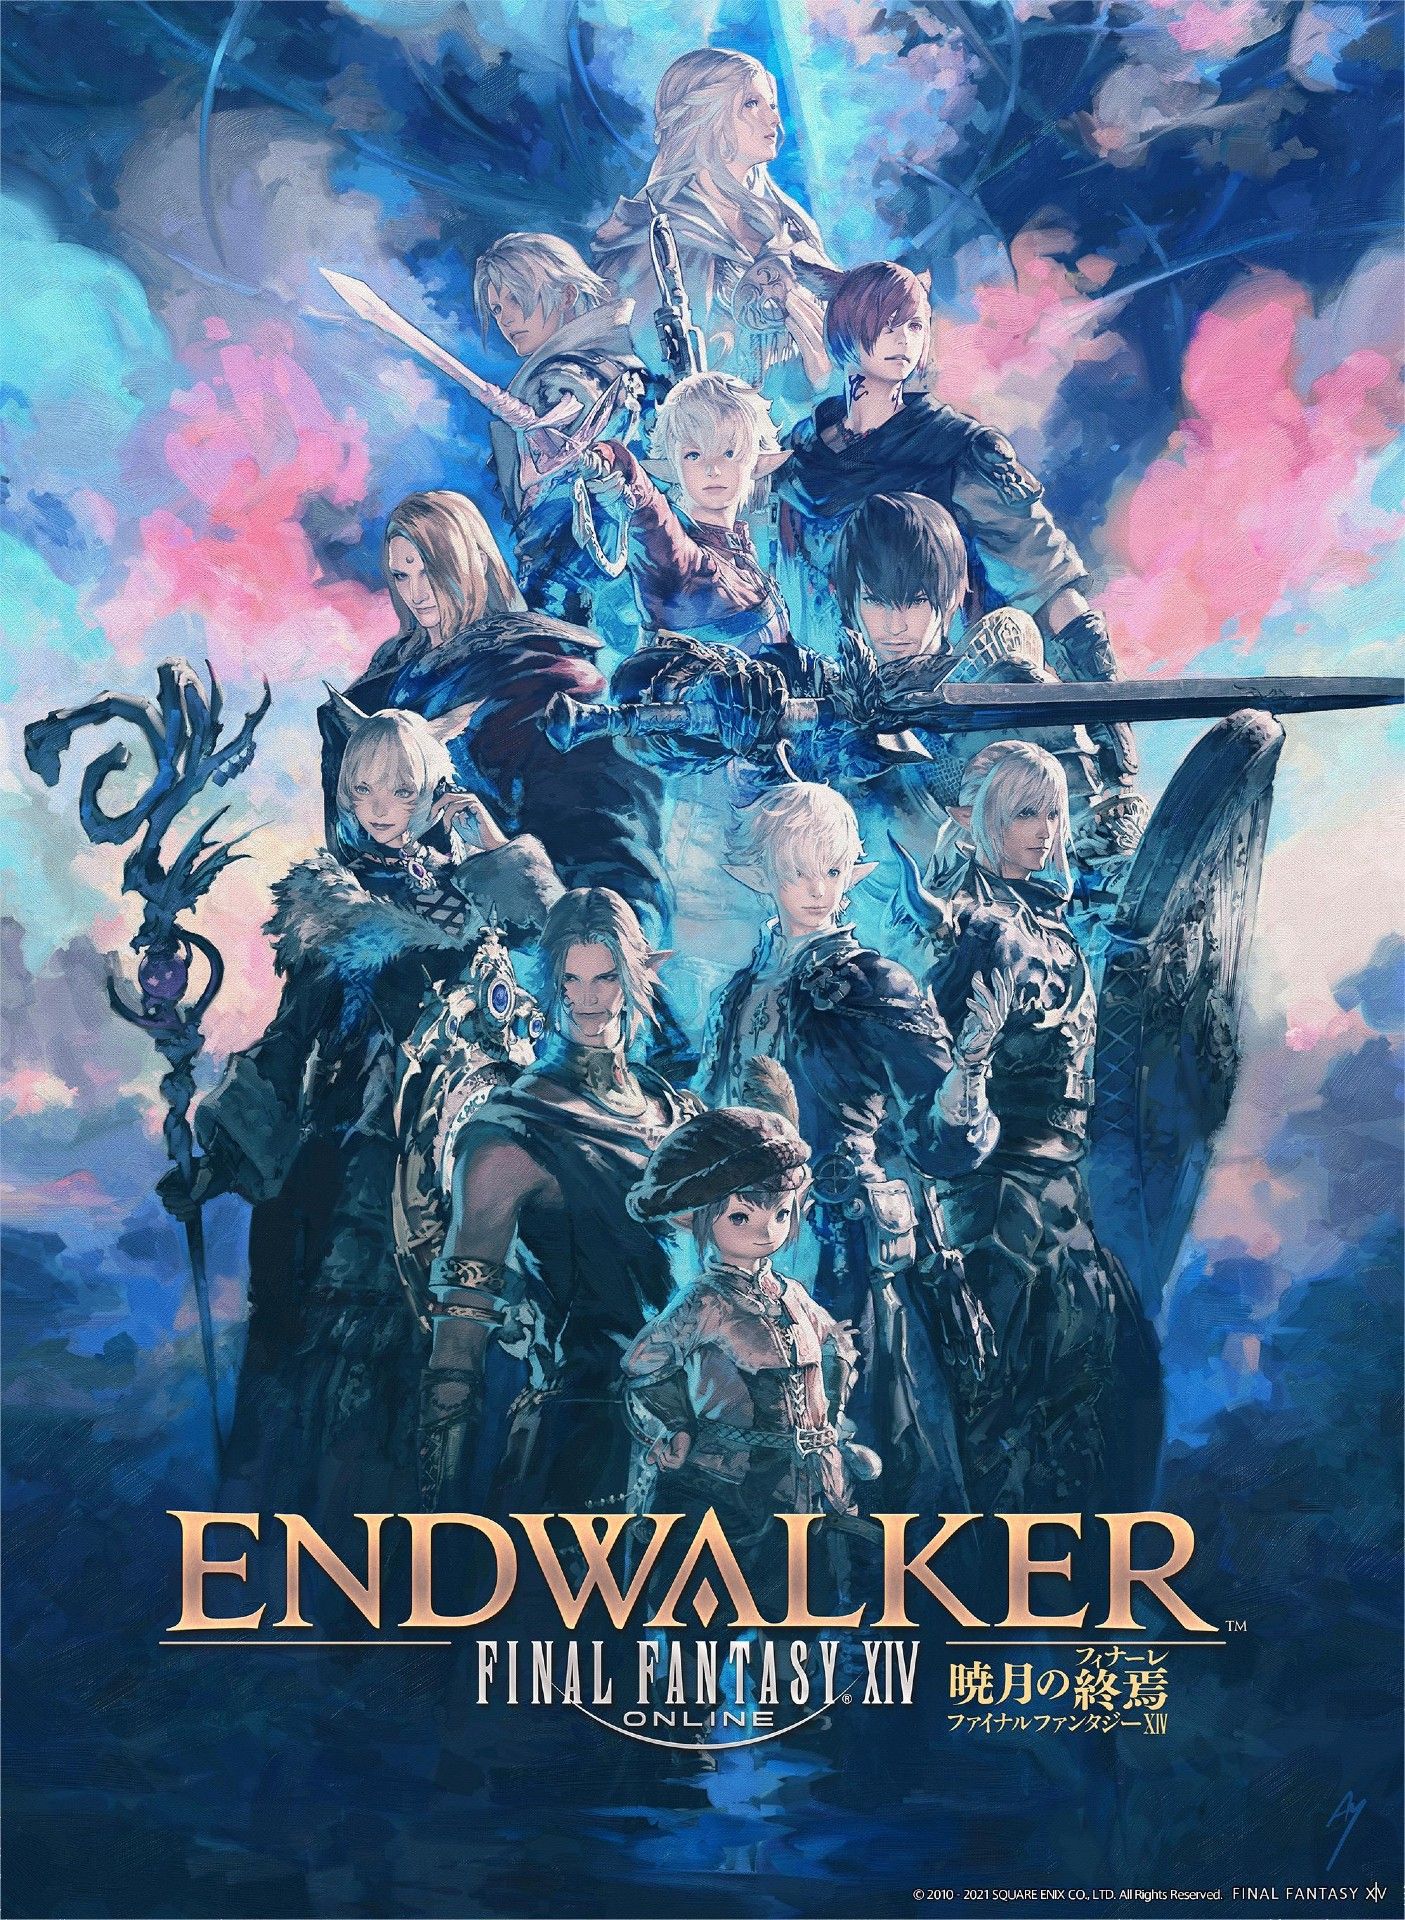 Final Fantasy XIV Endwalker Poster